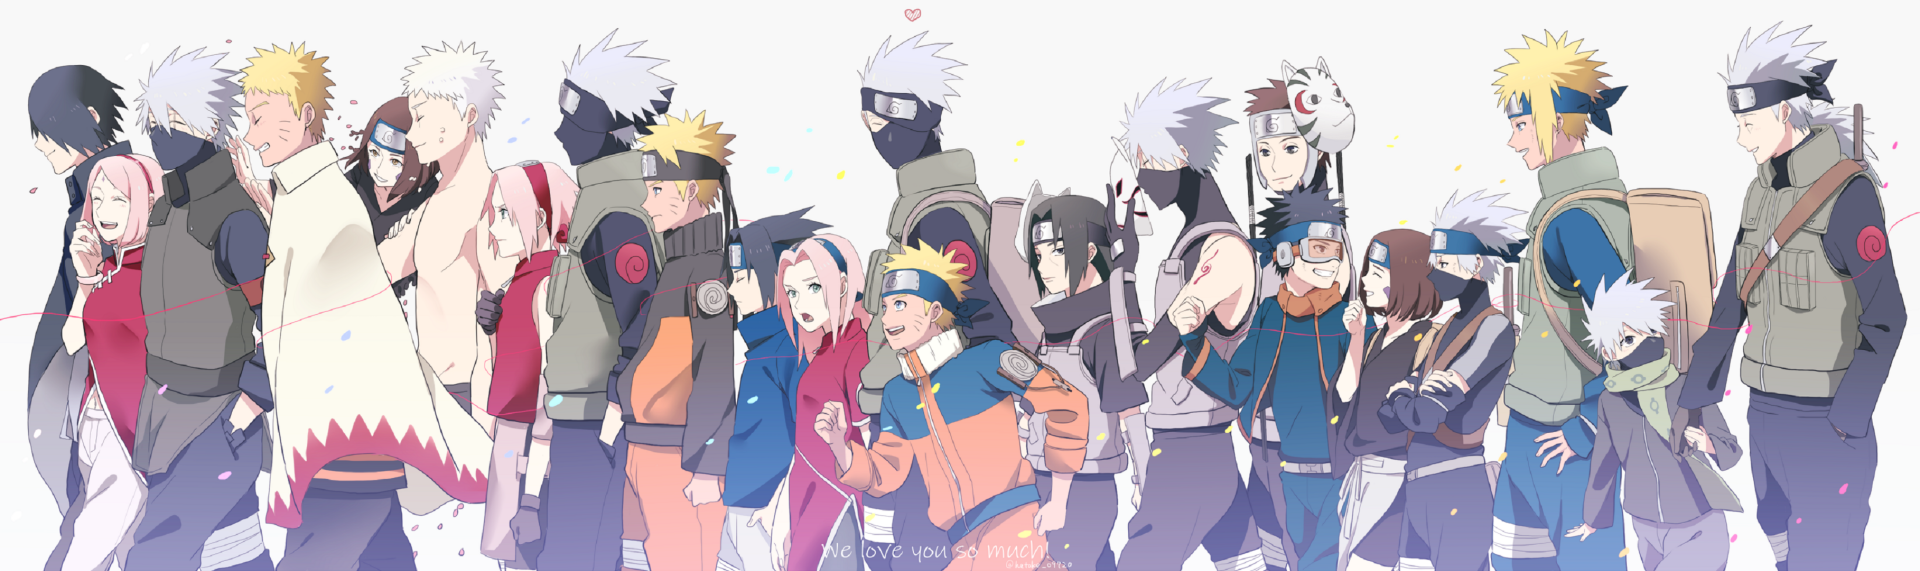 Naruto characters in a group HD desktop wallpaper featuring Rin, Minato, Itachi, Obito, Kakashi, Sasuke, Sakura, and Naruto Uzumaki.